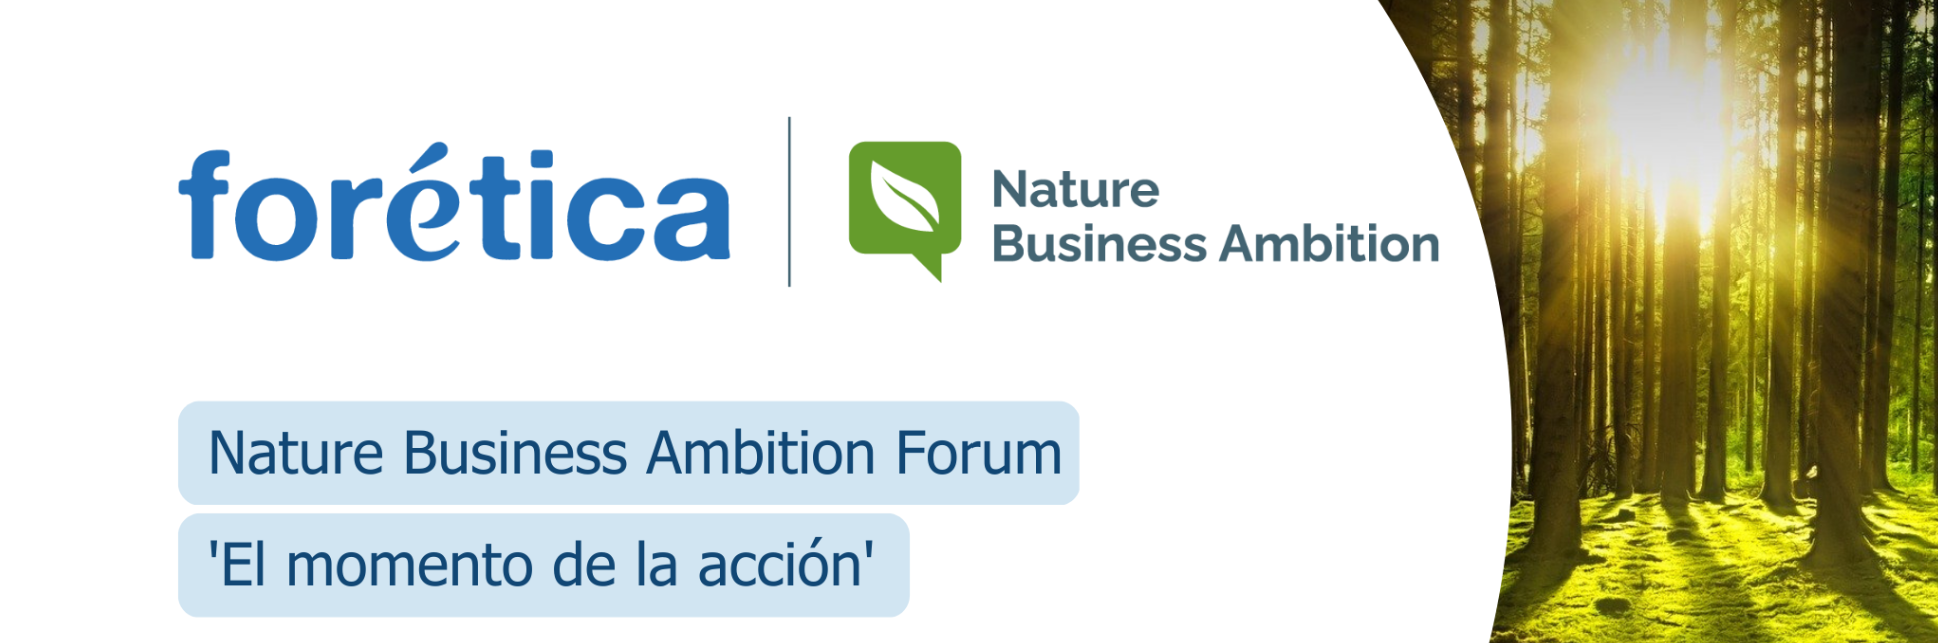 Nature Business Ambition Forum. El momento de la acción